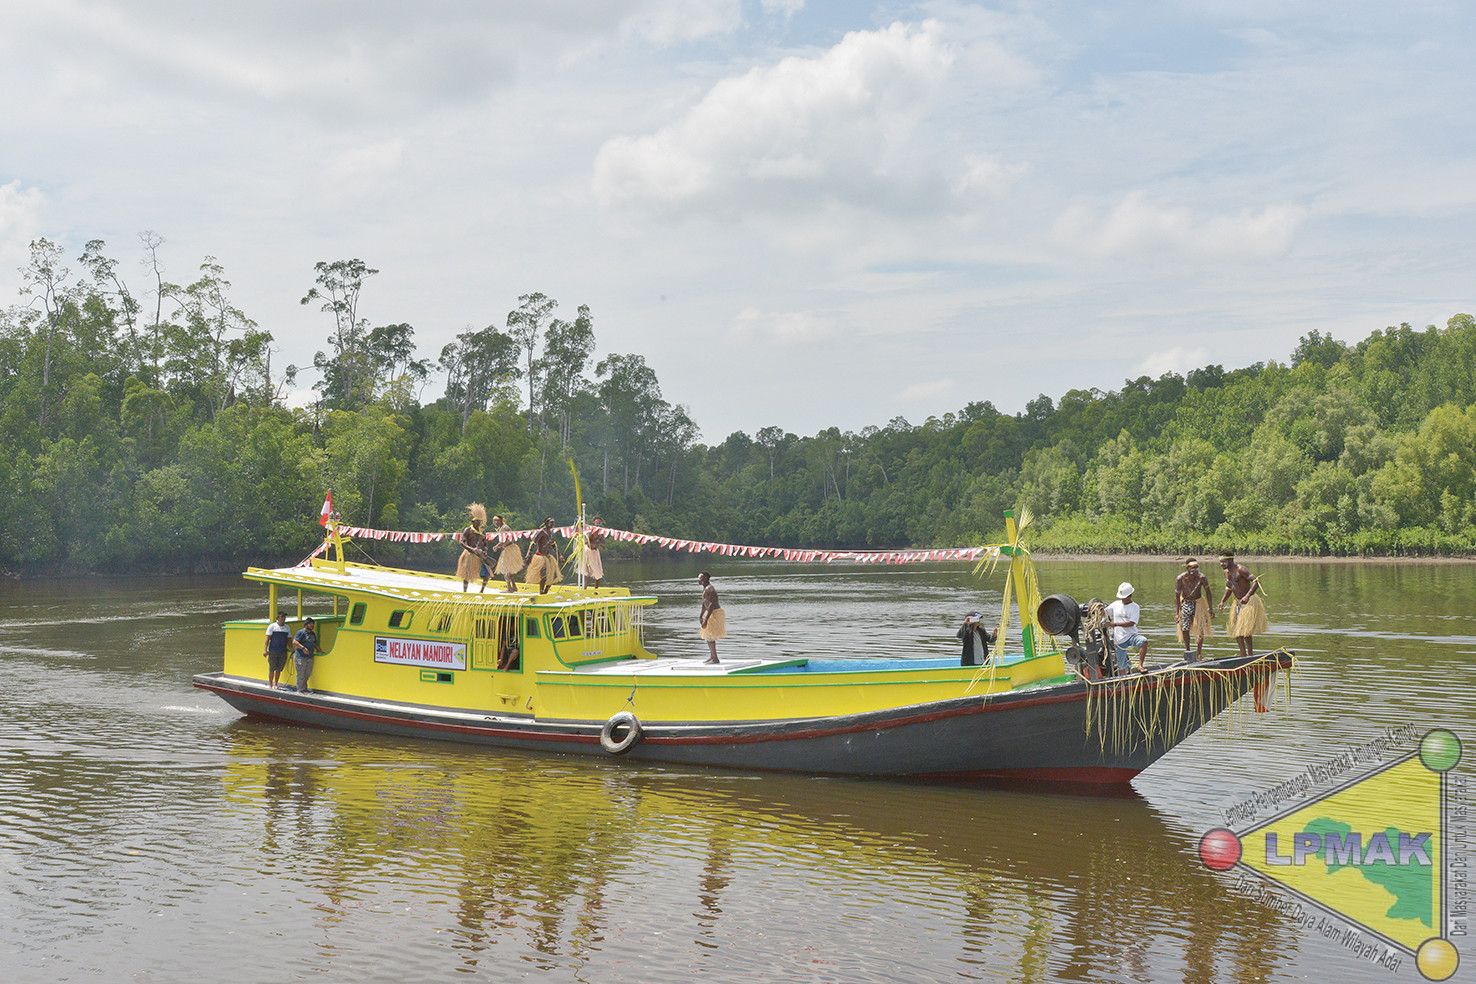 Kapal Ikan yang di hibahkan oleh Biro Ekonomi LPMAK kepada Kelompok Nelayan Mandiri